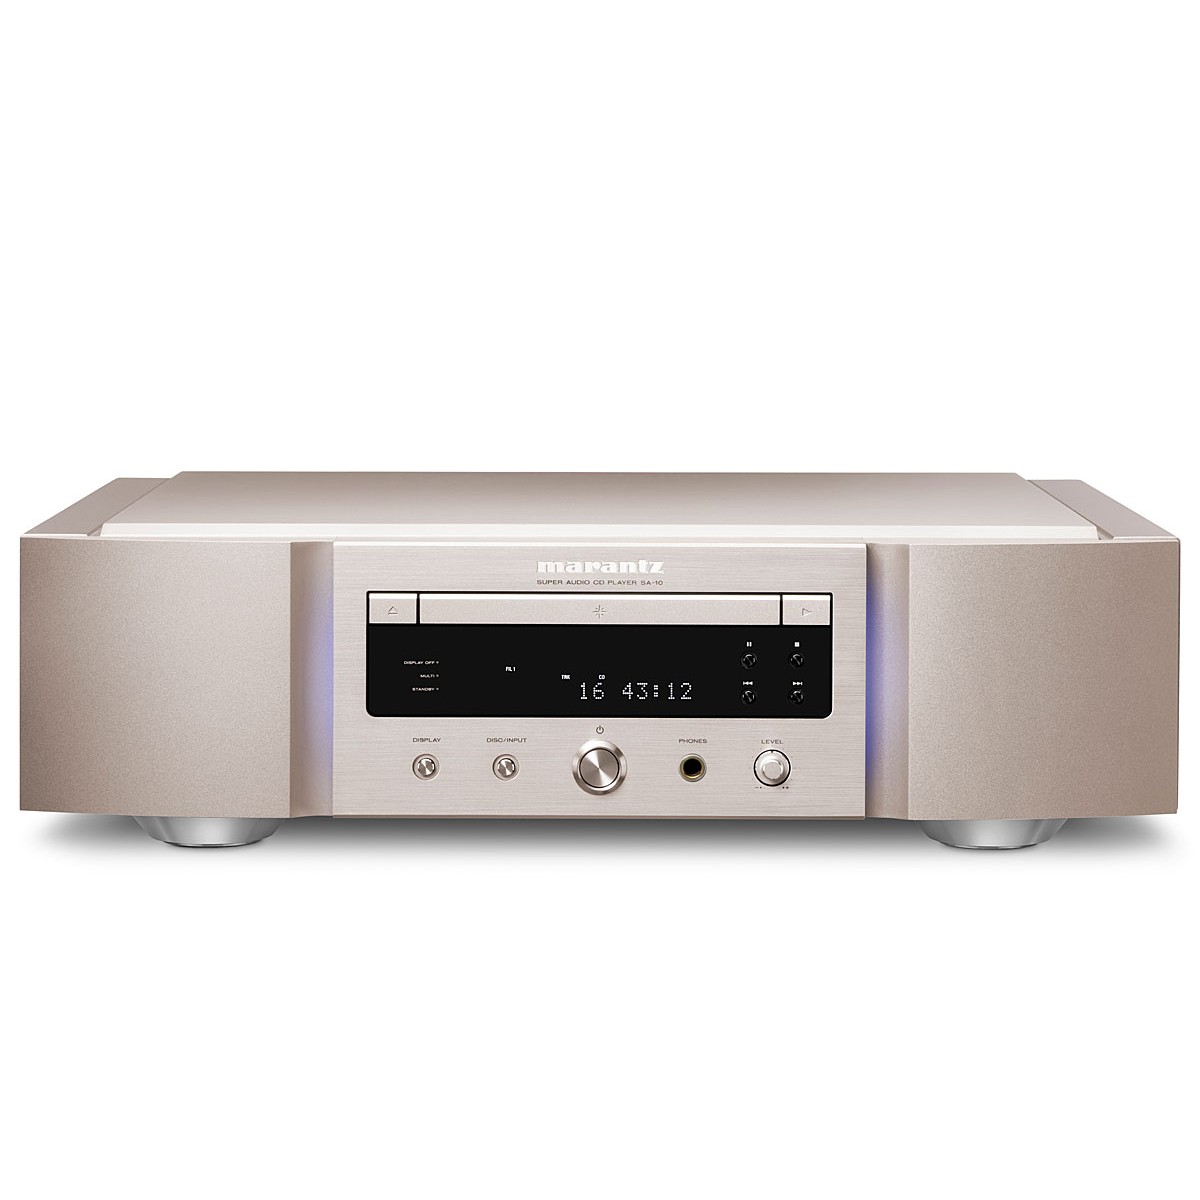 Marantz SA-10 CD/SACD player